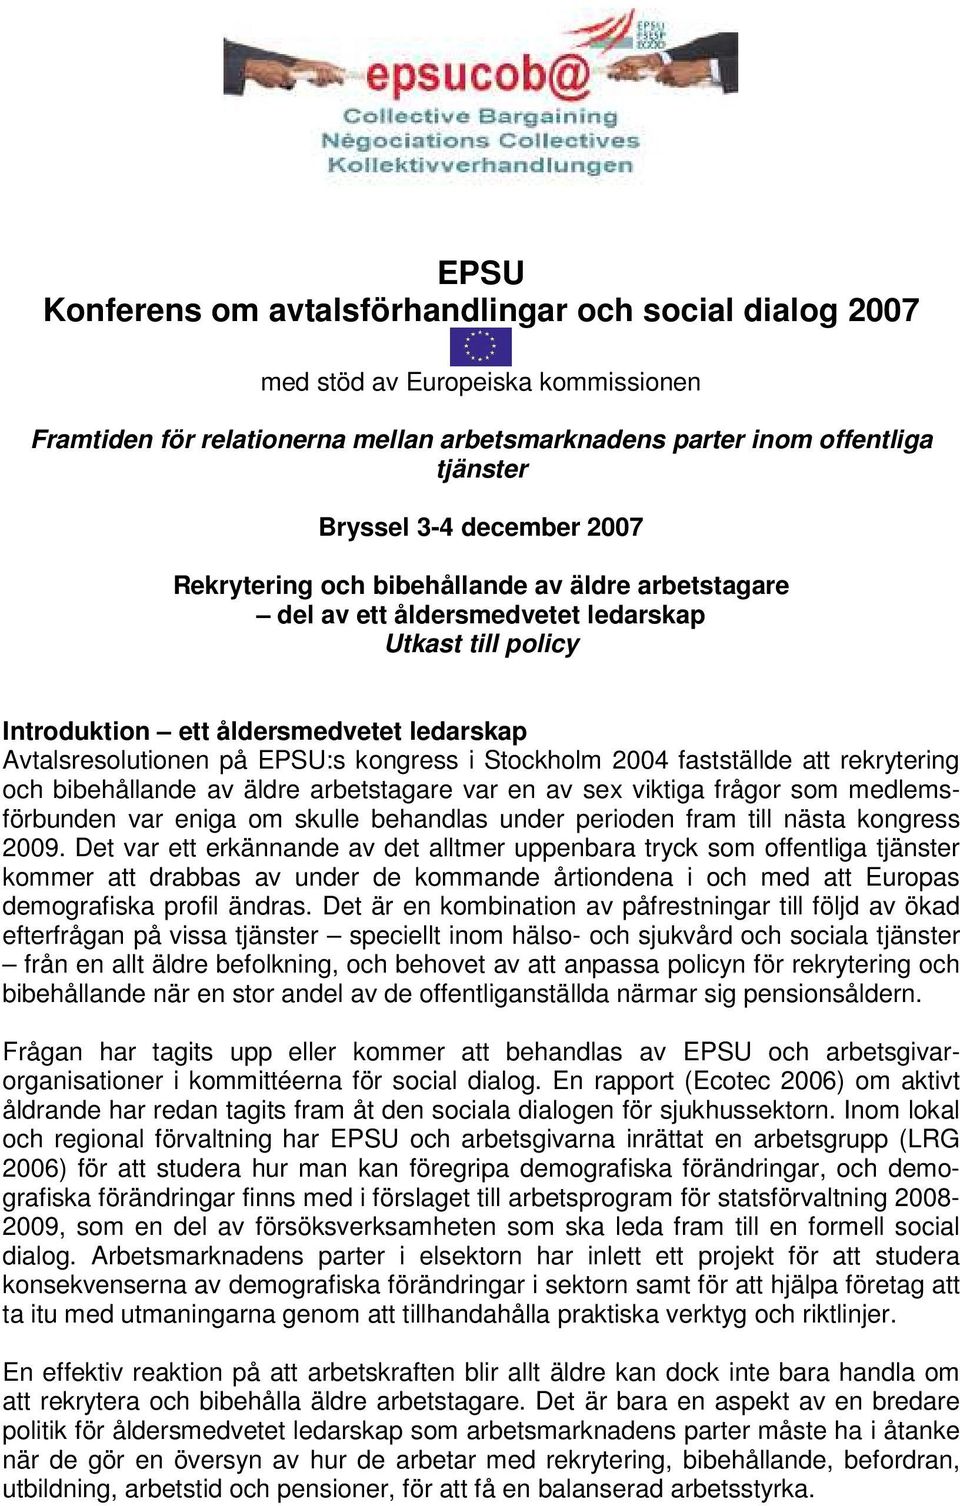 i Stockholm 2004 fastställde att rekrytering och bibehållande av äldre arbetstagare var en av sex viktiga frågor som medlemsförbunden var eniga om skulle behandlas under perioden fram till nästa